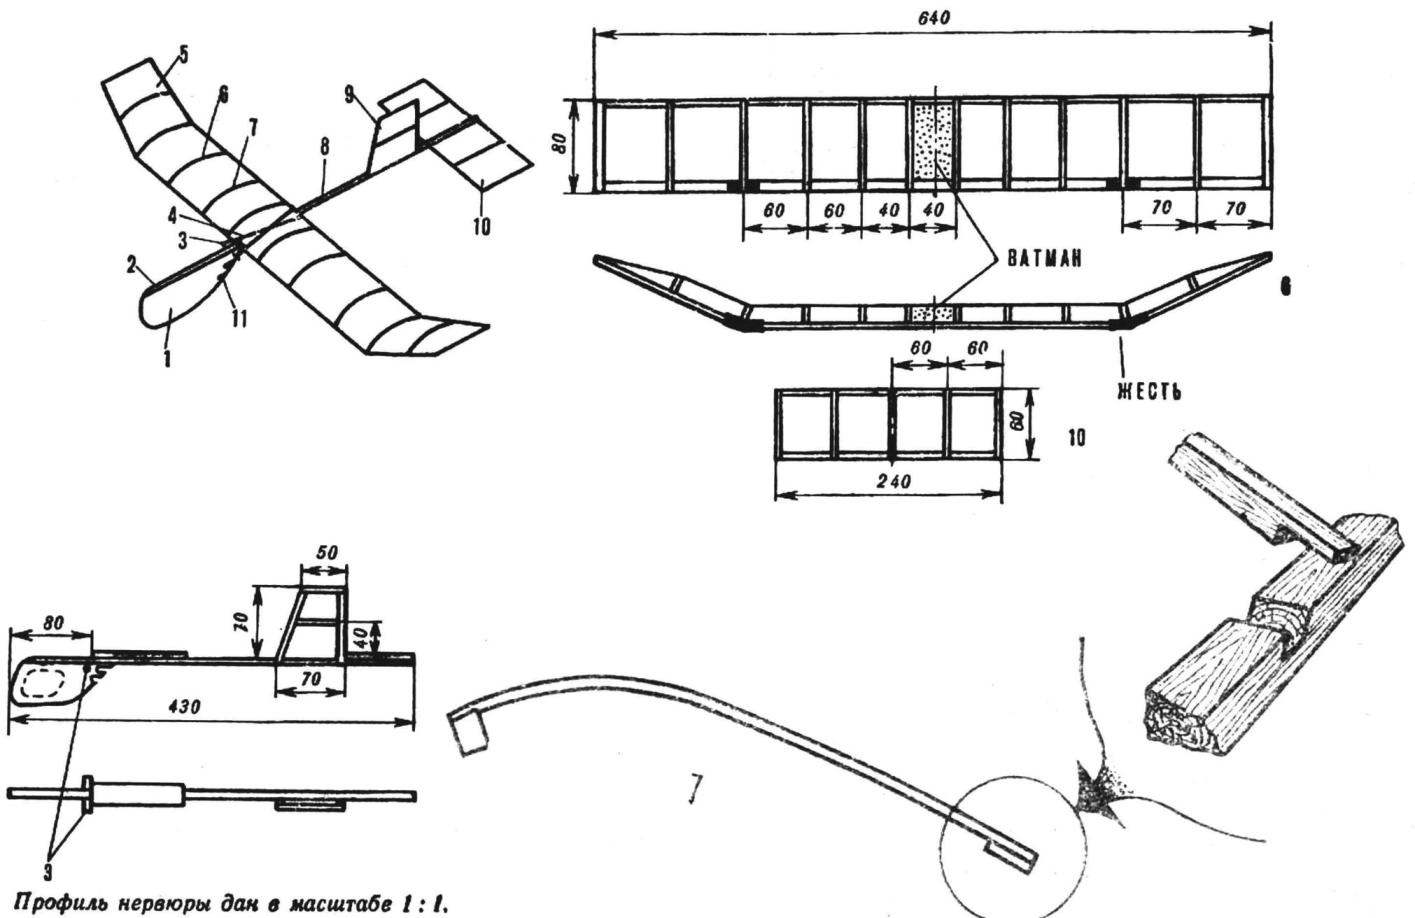 Model airframe design S. Baksheyev